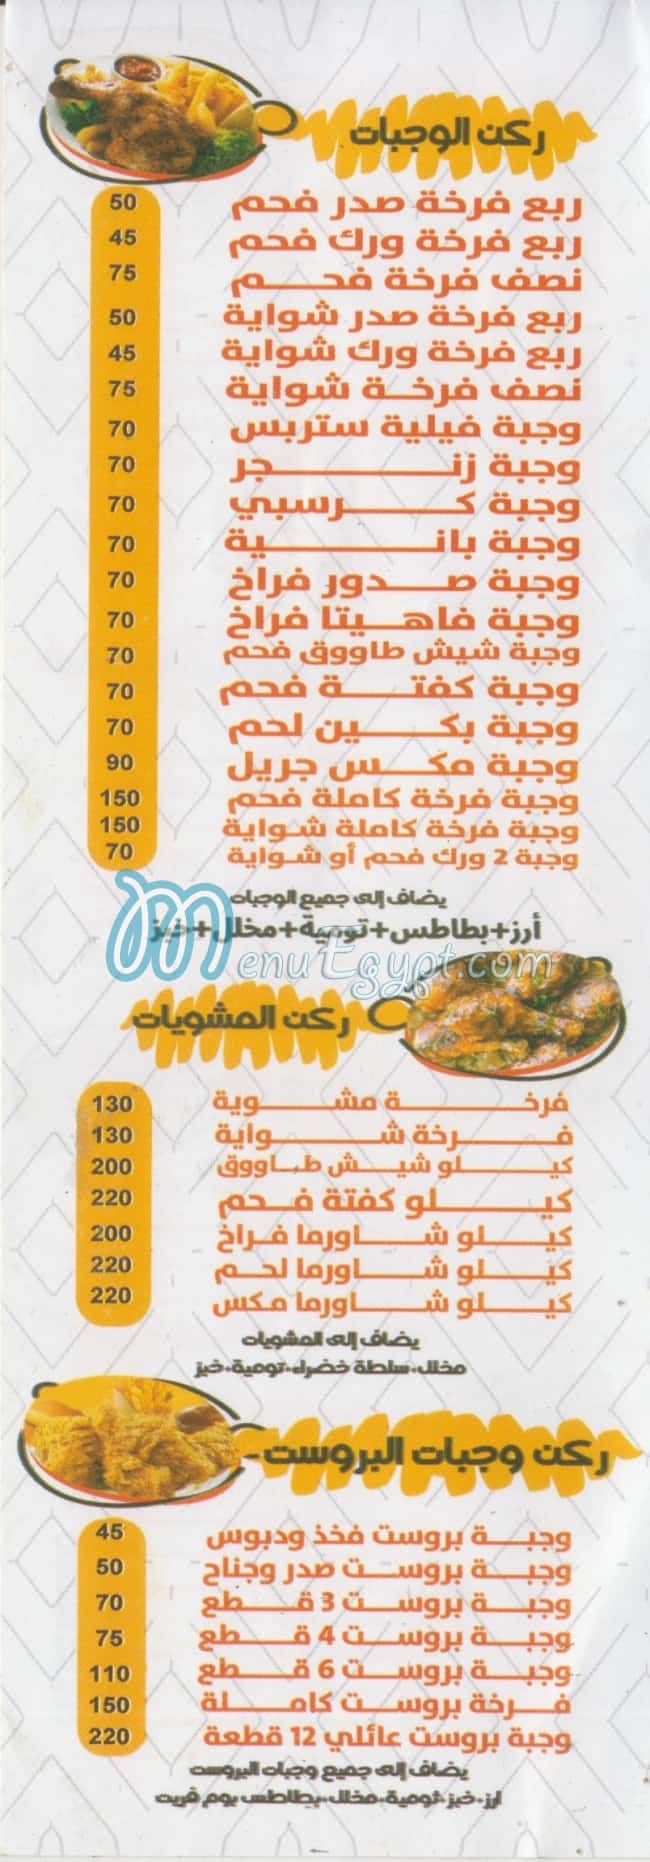 El Harameen online menu